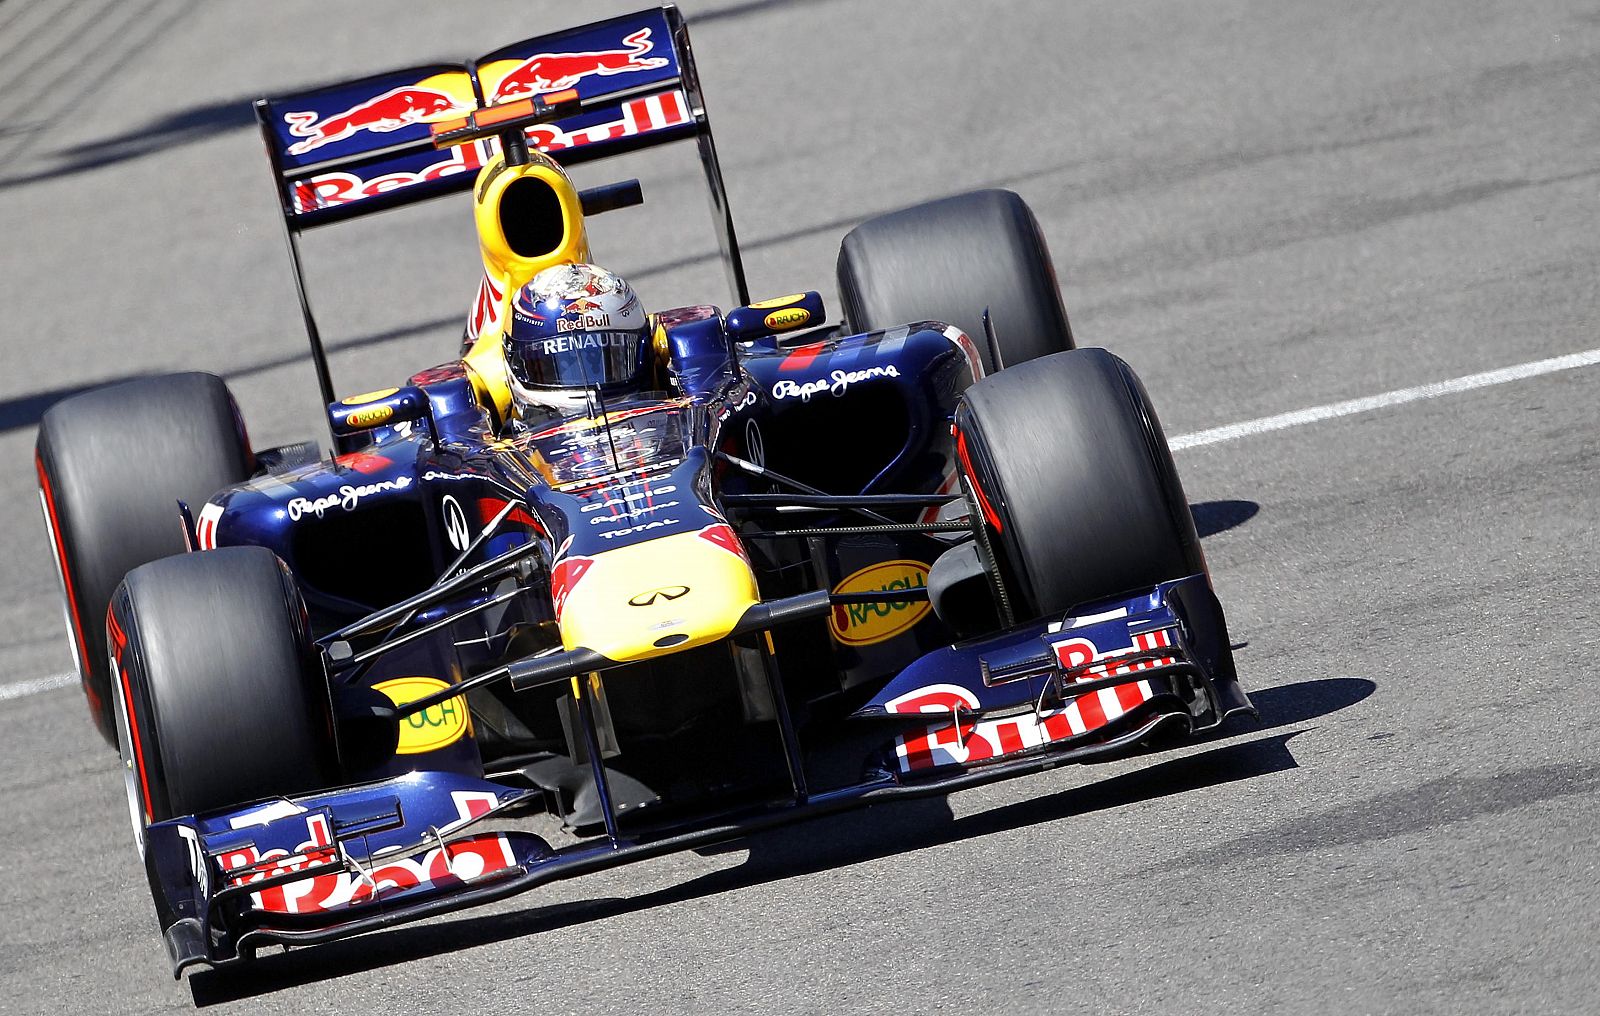 El alemán Vettel (Red Bull) saldrá el primero en el Gran Premio de Mónaco de Fórmula 1.